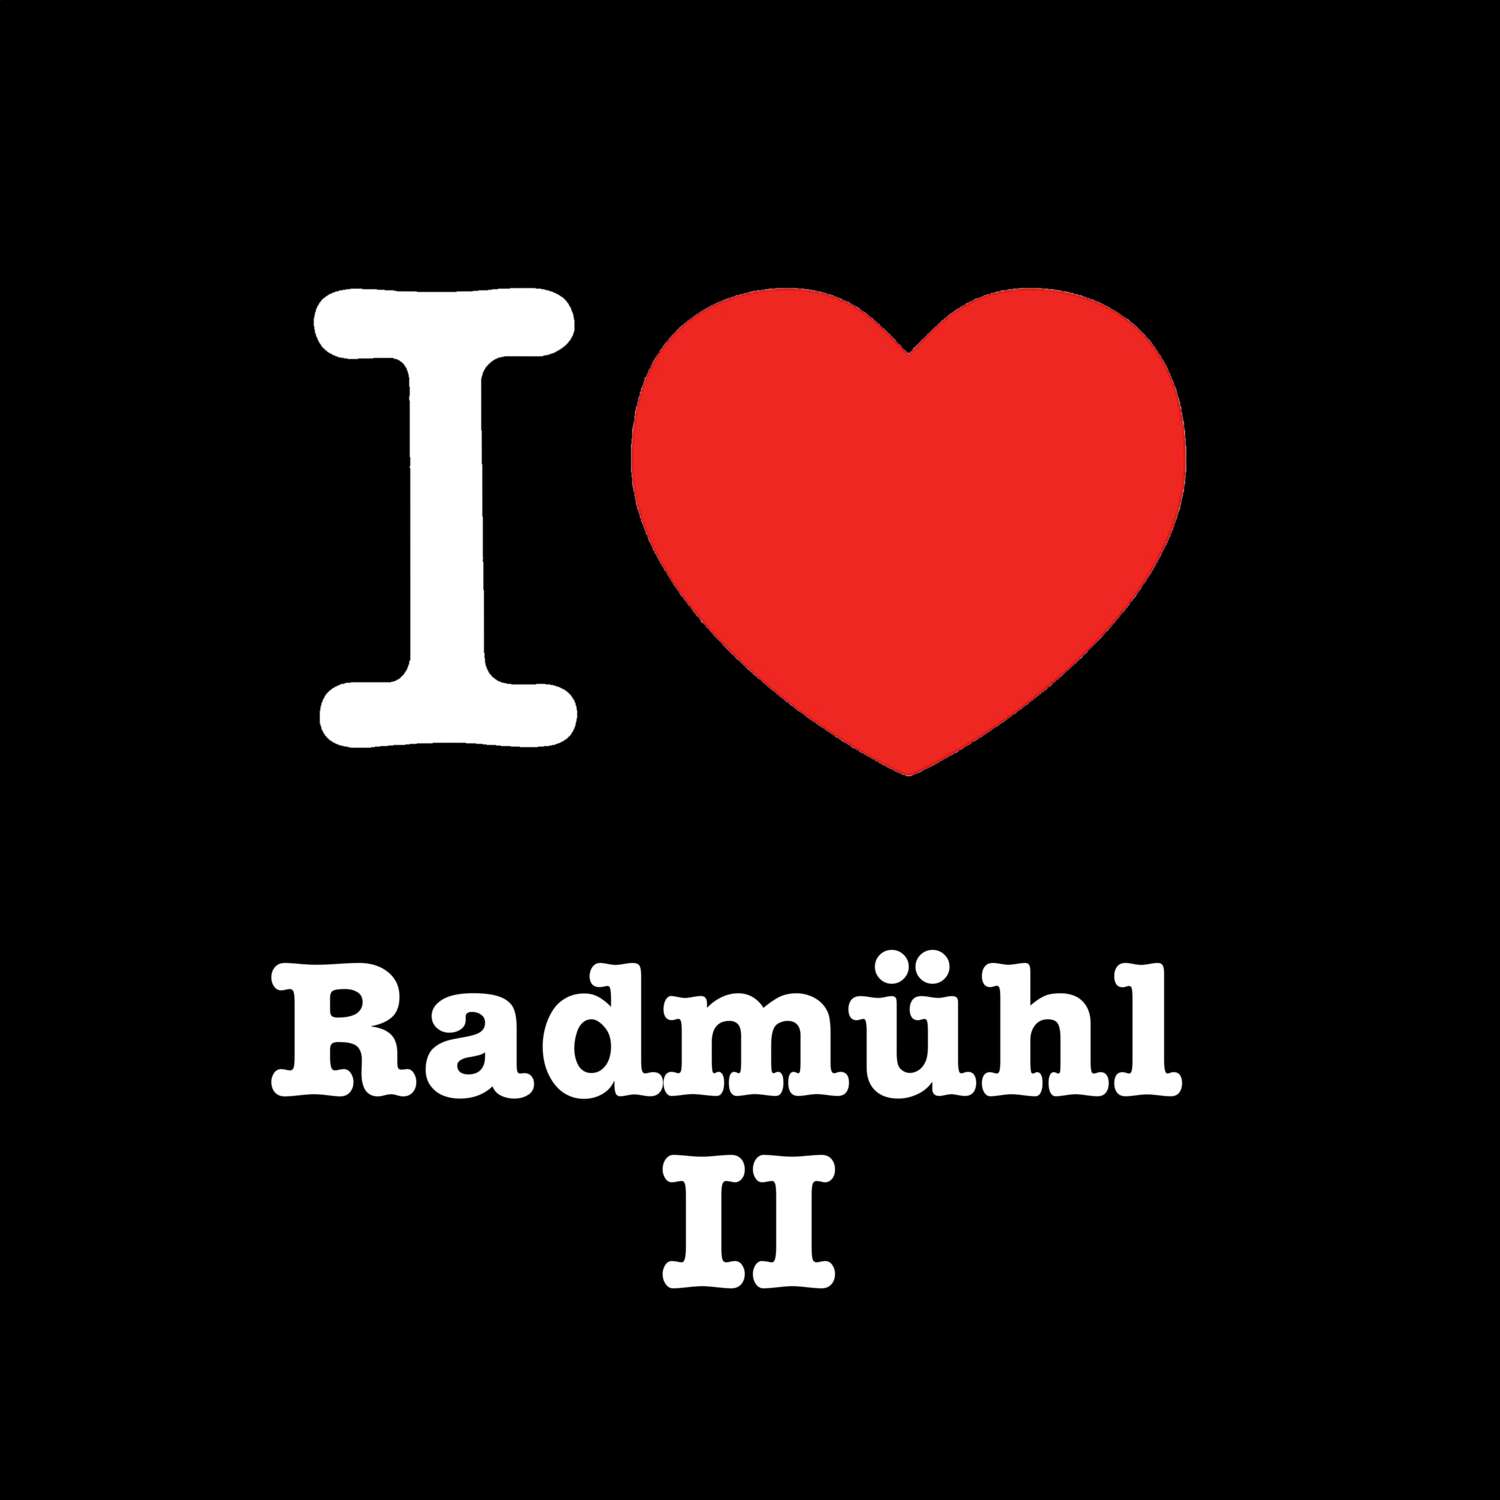 Radmühl II T-Shirt »I love«